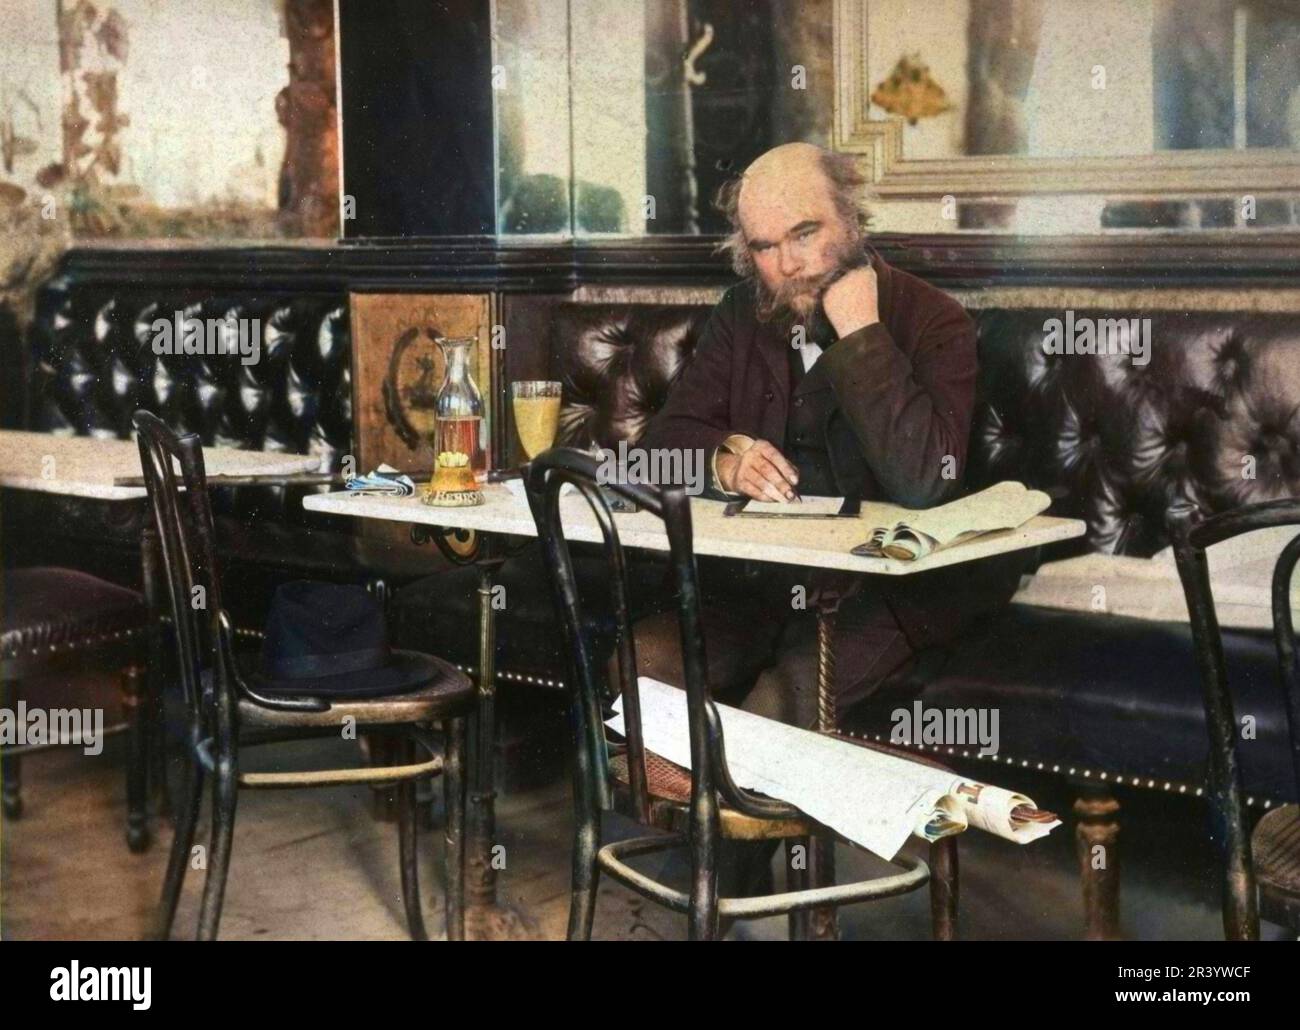 Paul Verlaine dans un café a Paris photo de Paul Dornac 1892. foto colorié ultérieuement Foto Stock